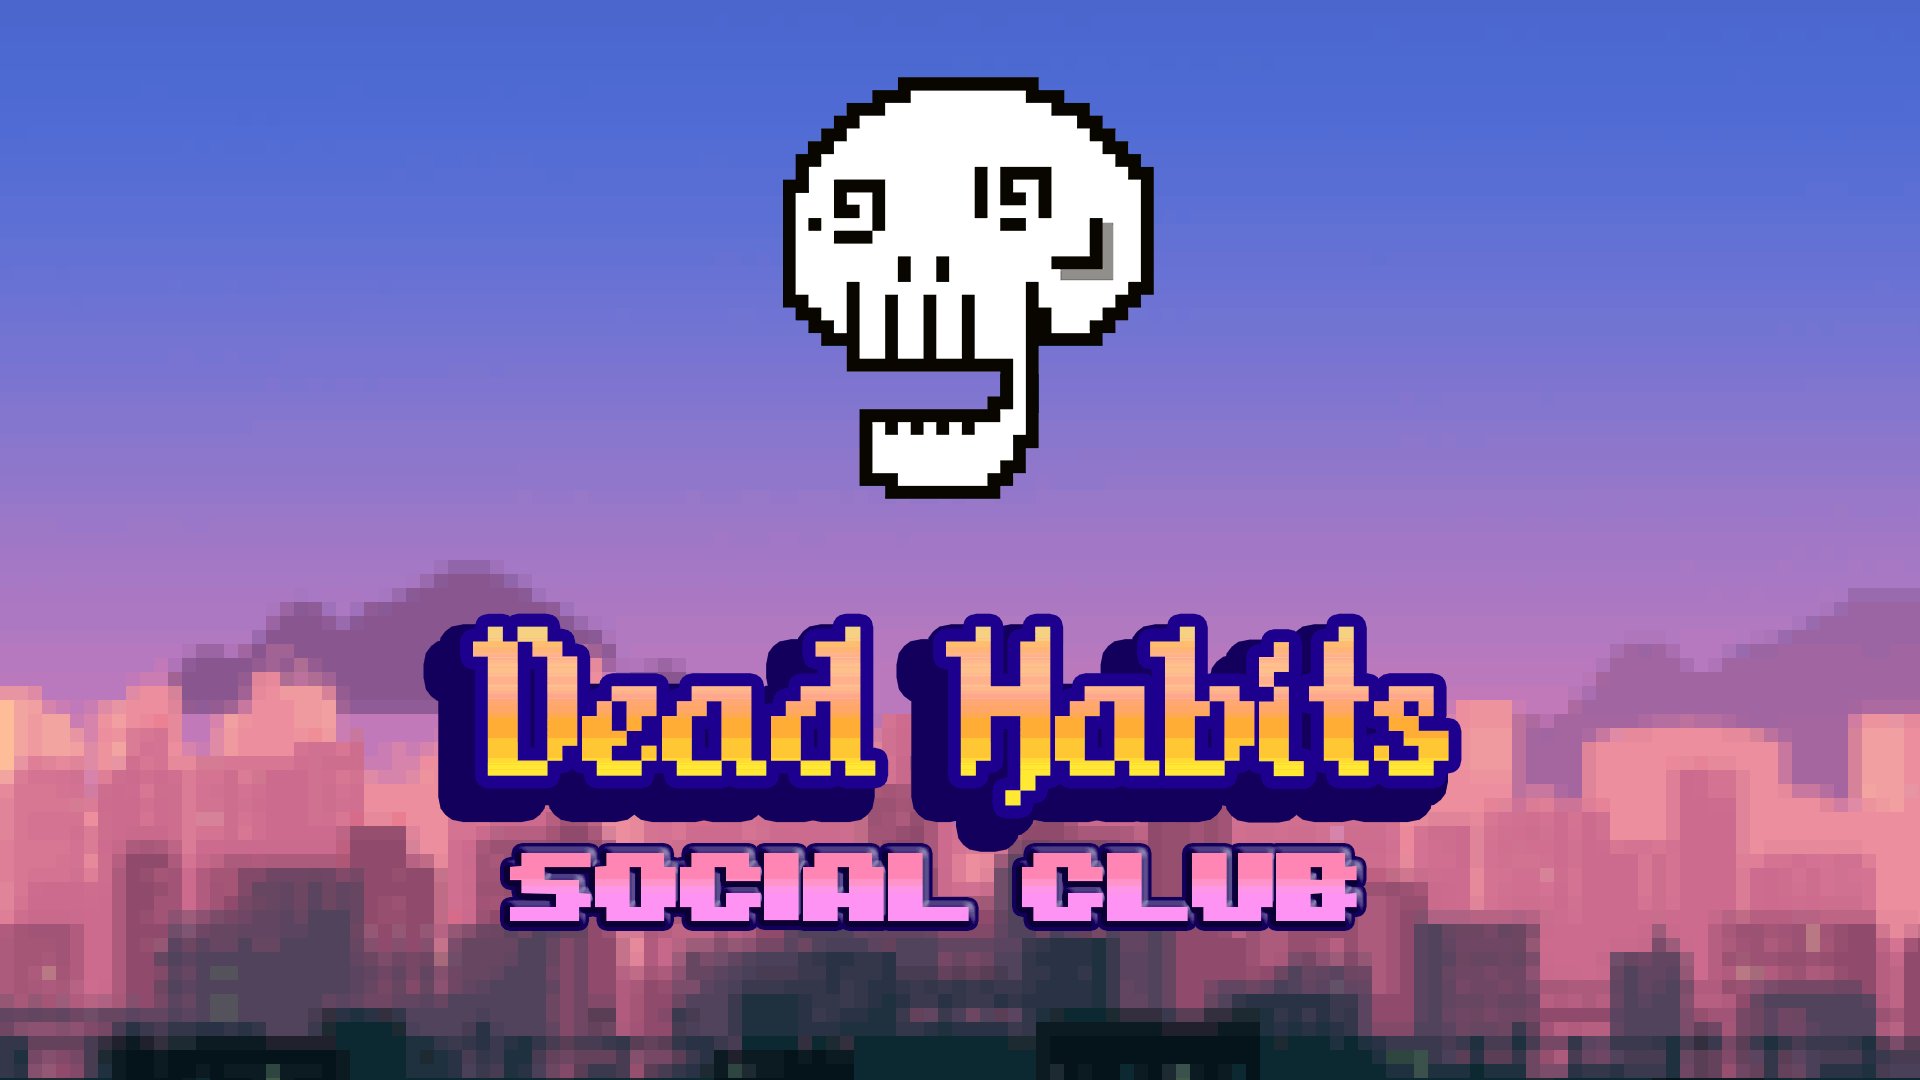 Dead Habits Social Club NFT: 7777 Unique Collection